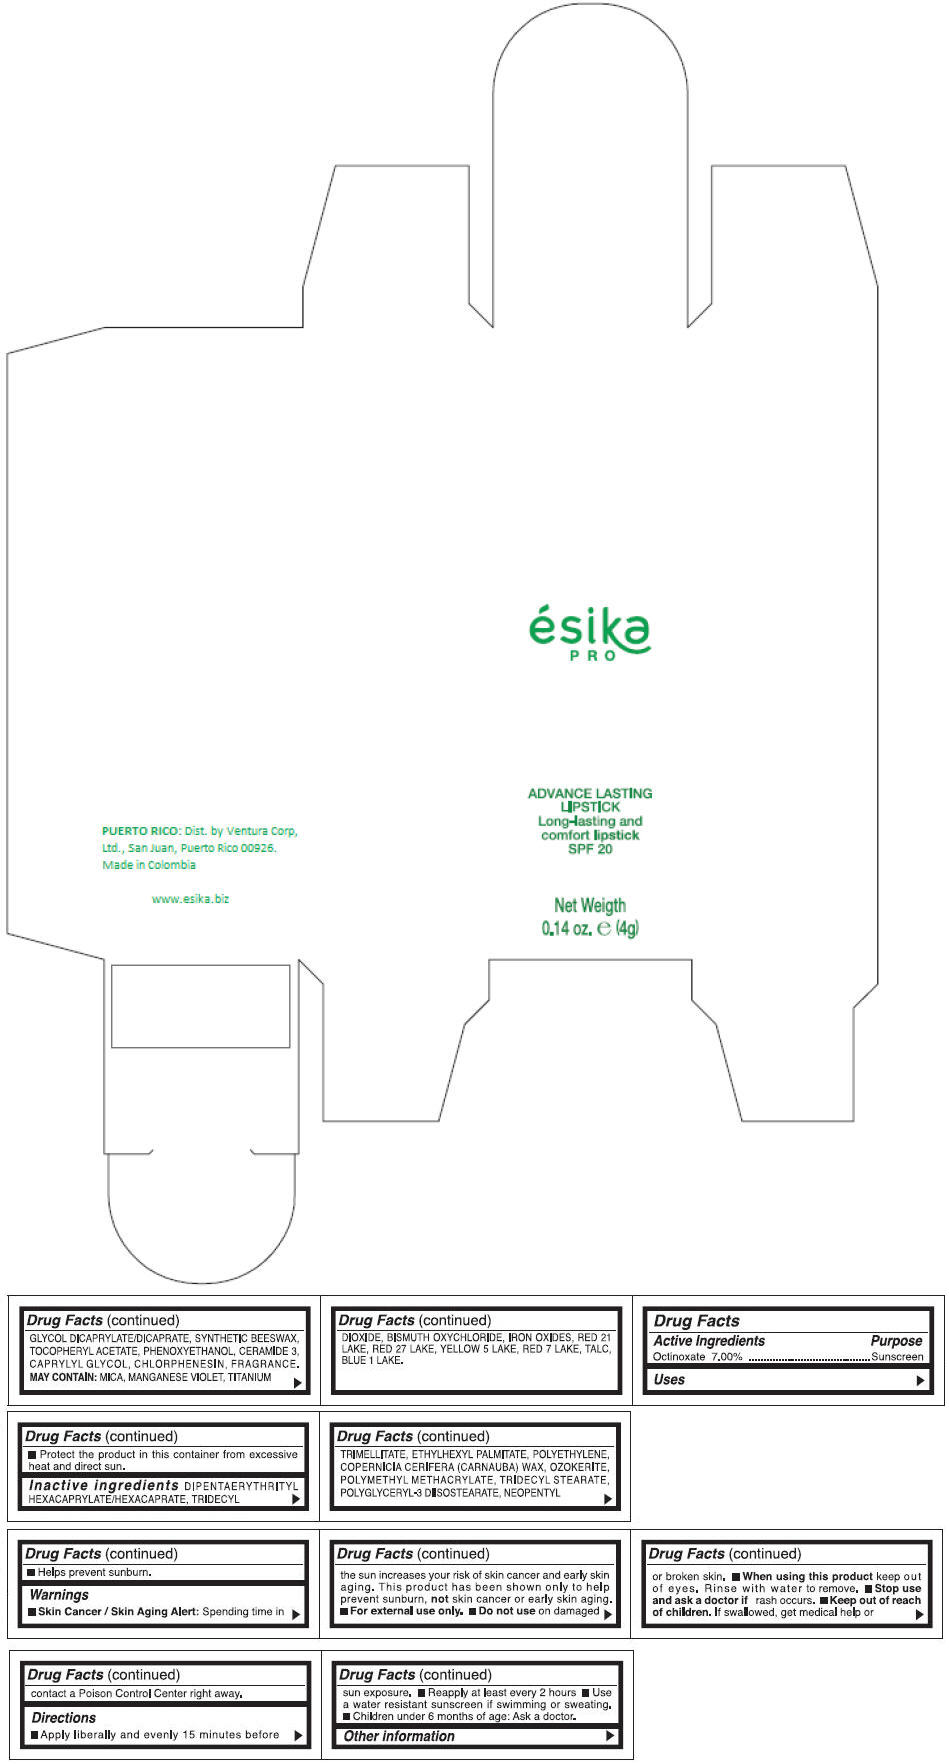 PRINCIPAL DISPLAY PANEL - 4 g Tube Box - (FUCSIA TENTACION) - PINK